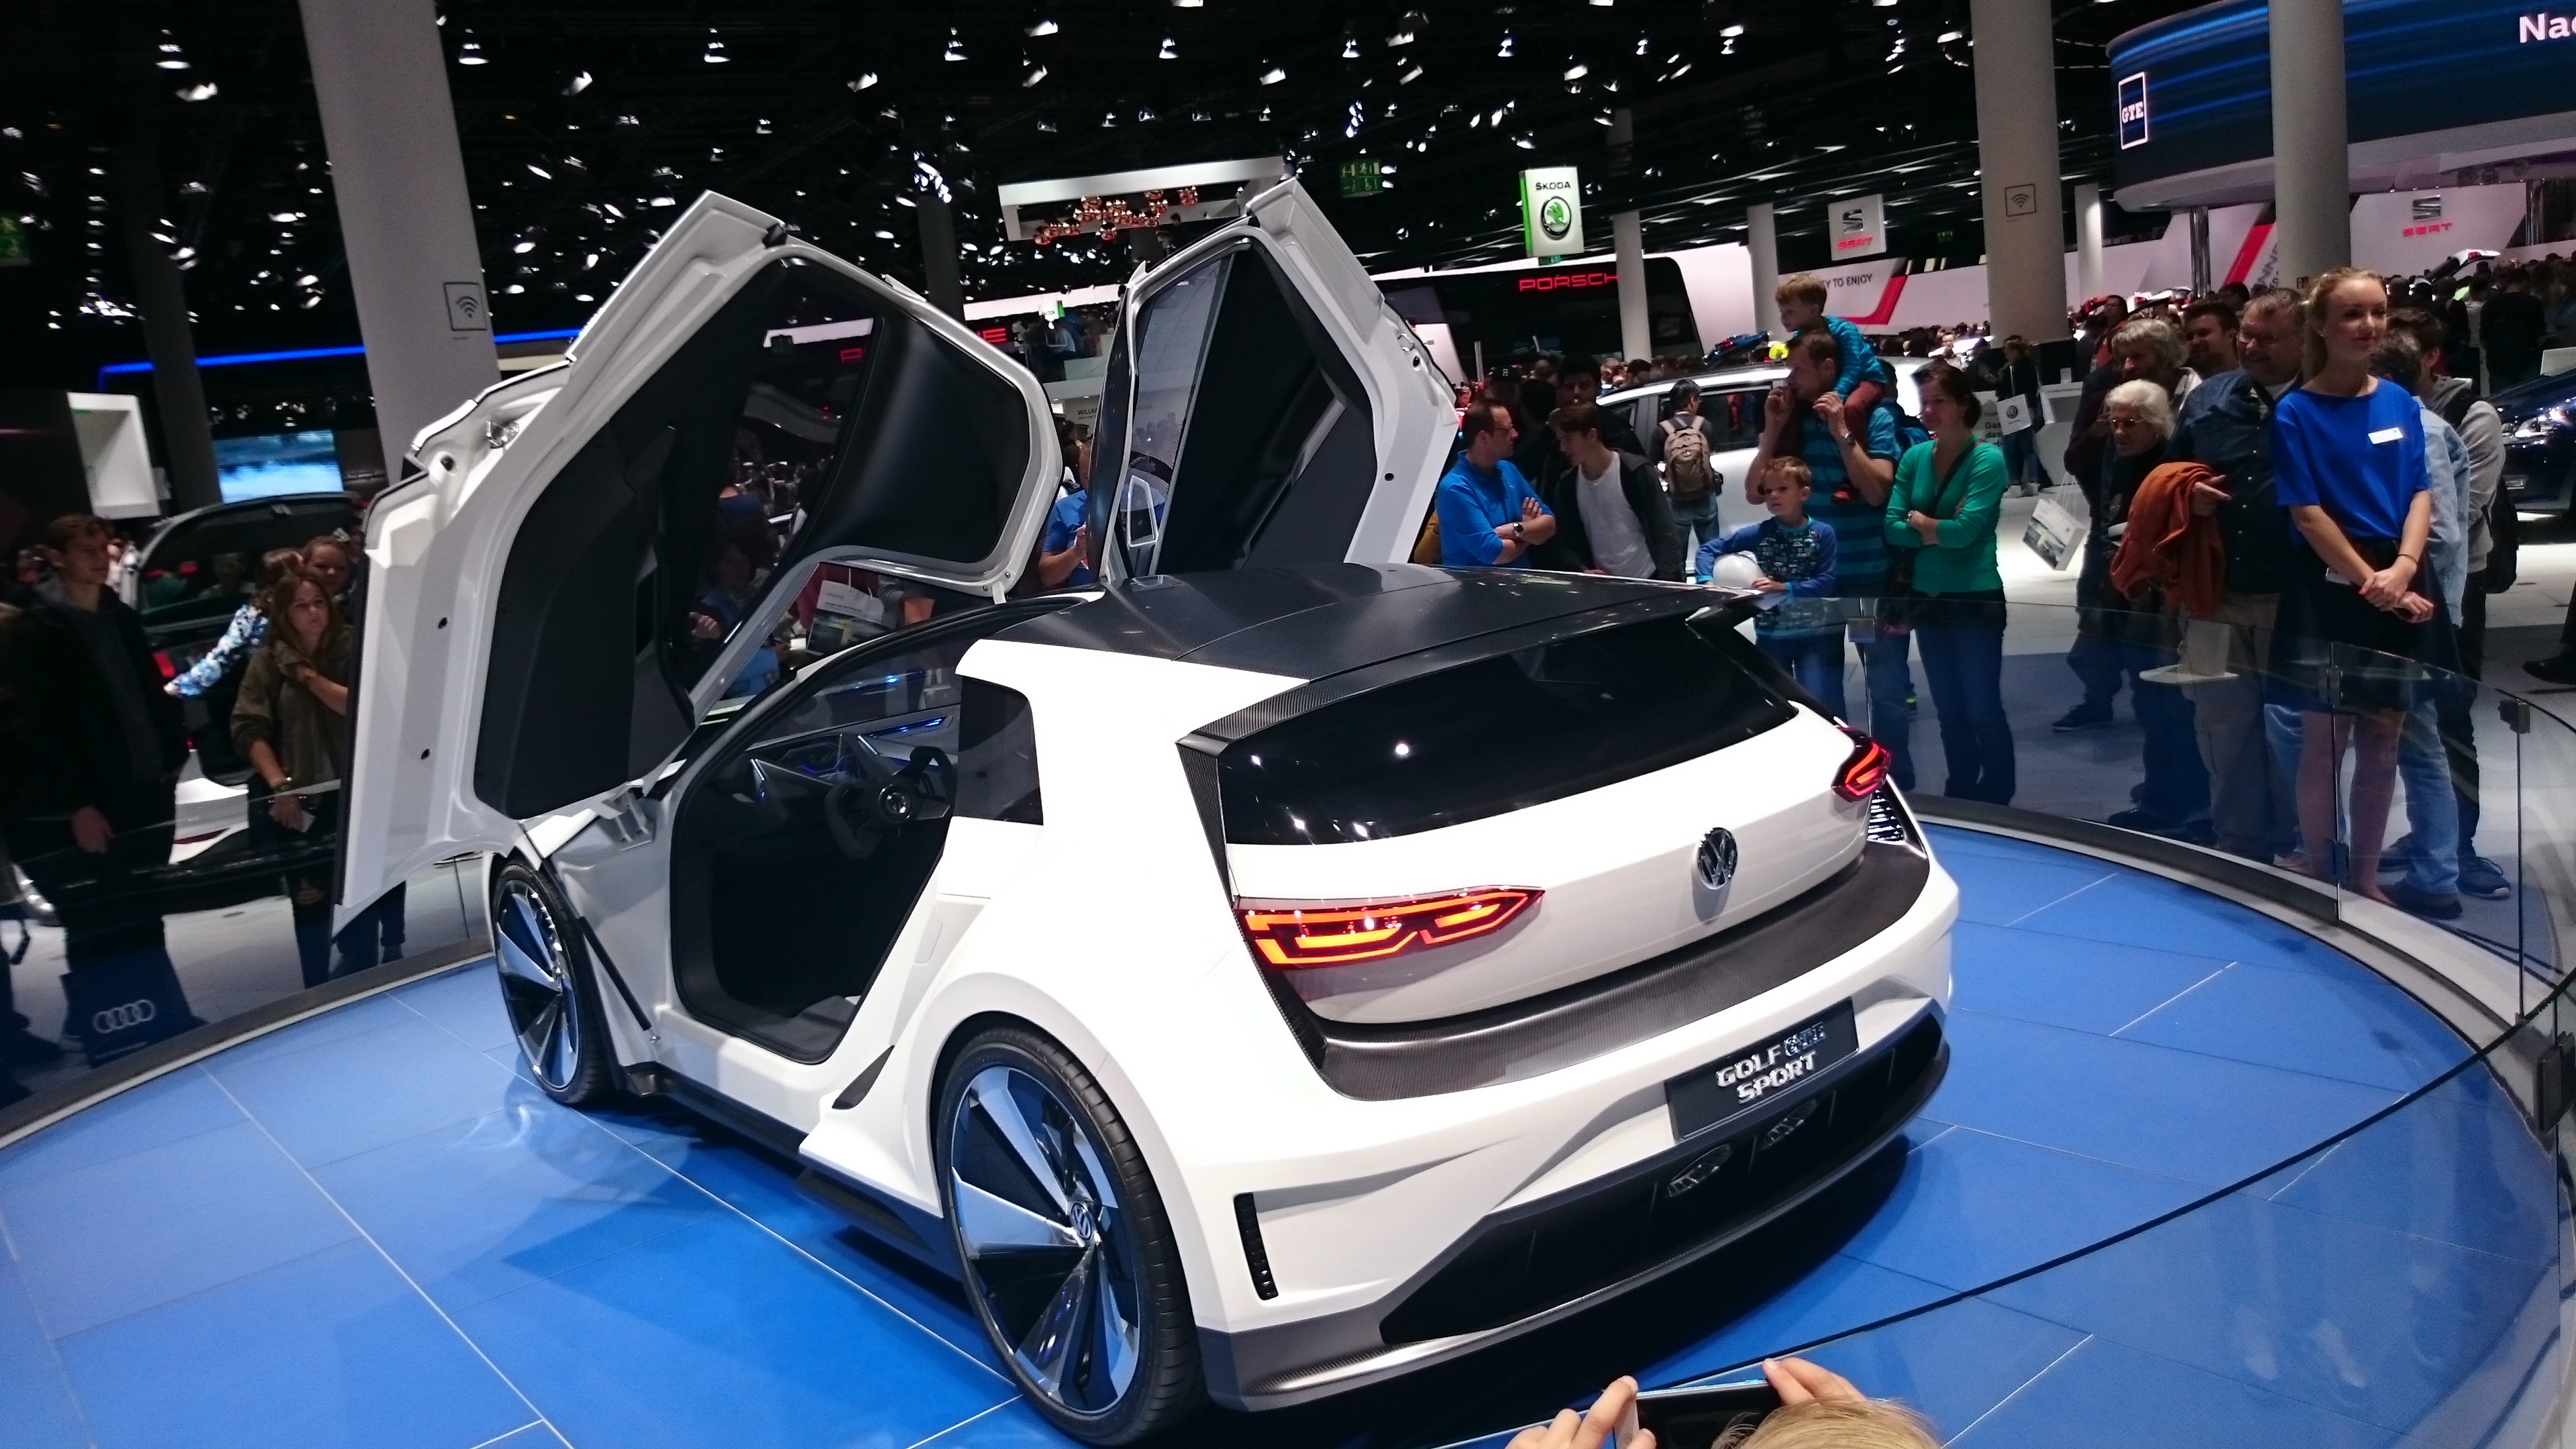 Fotos 360 Volkswagen Golf GTE Sport concept #VidePan en #IAA2015